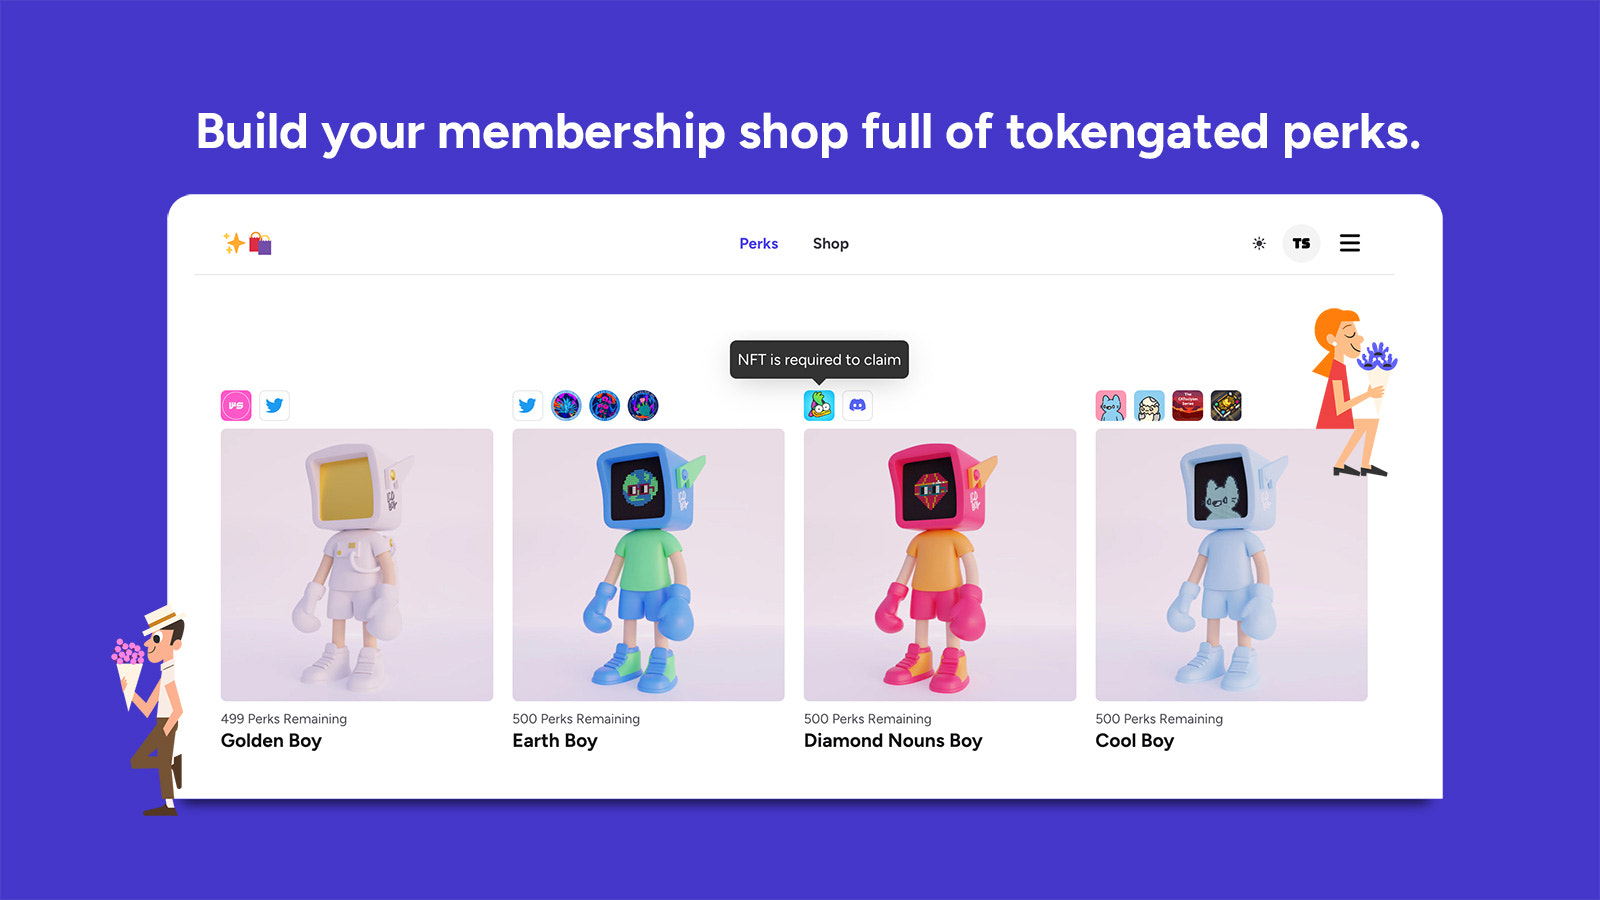 Construa sua loja de membros cheia de vantagens com token.